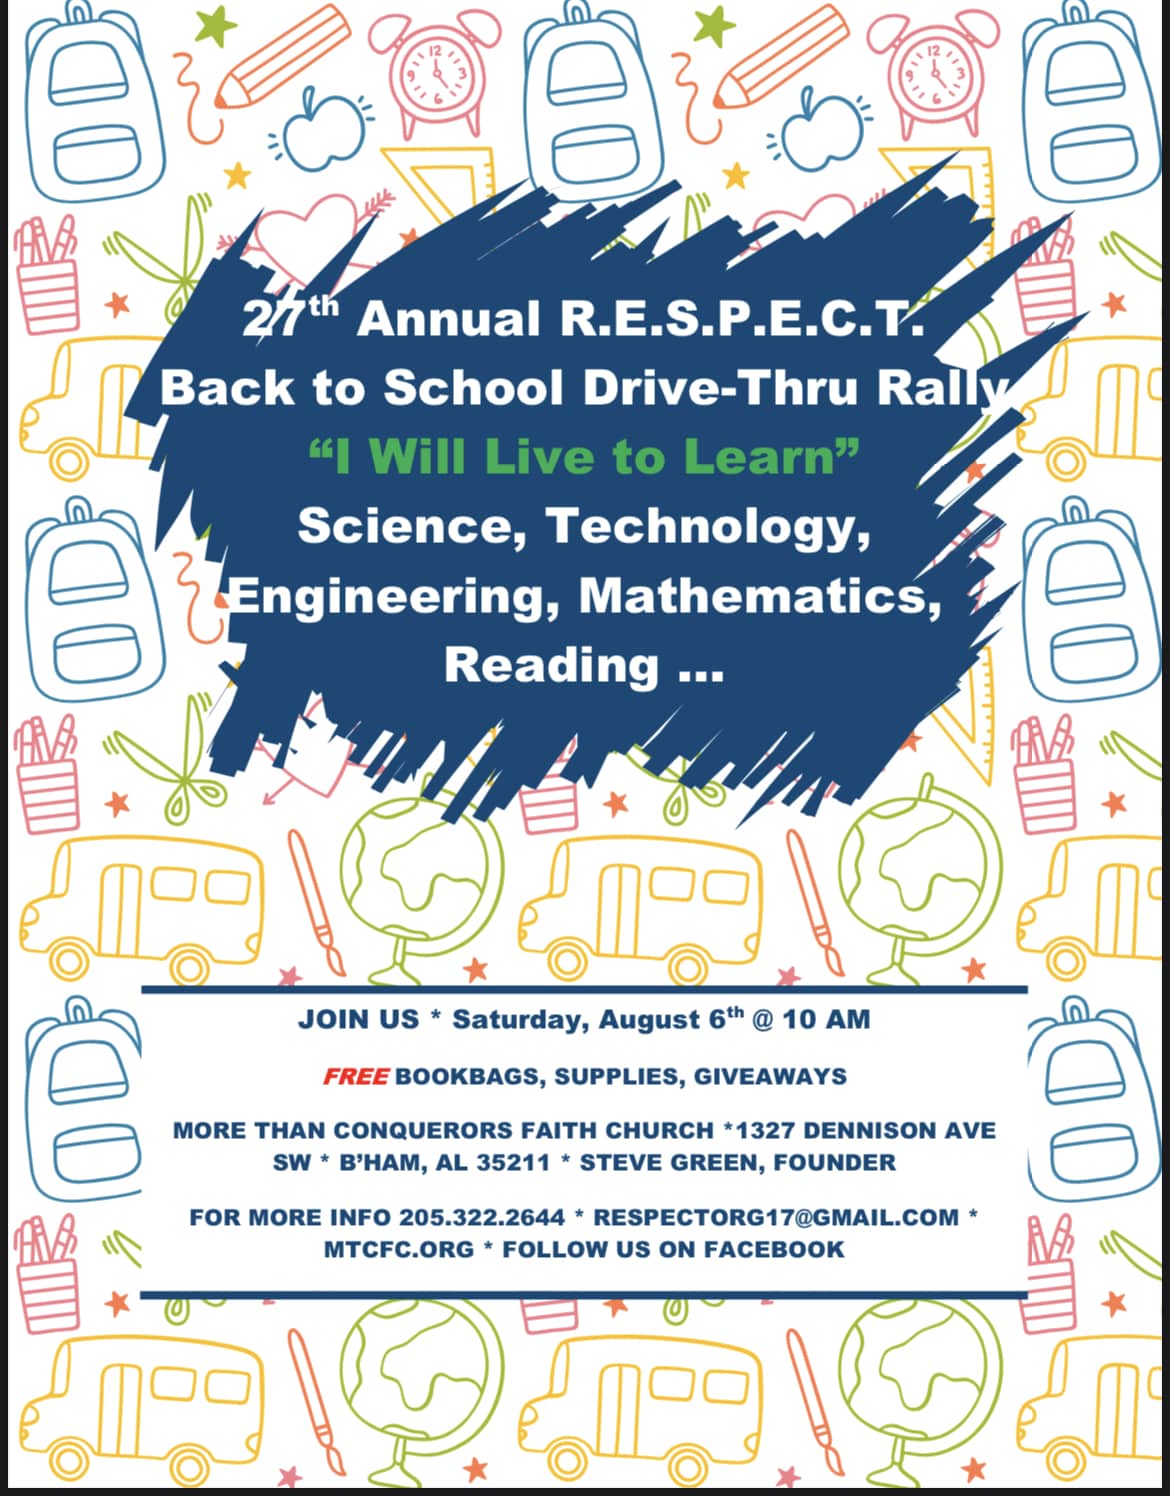 27th Annual R.E.S.P.E.C.T. Back to School Drive-Thru Rally